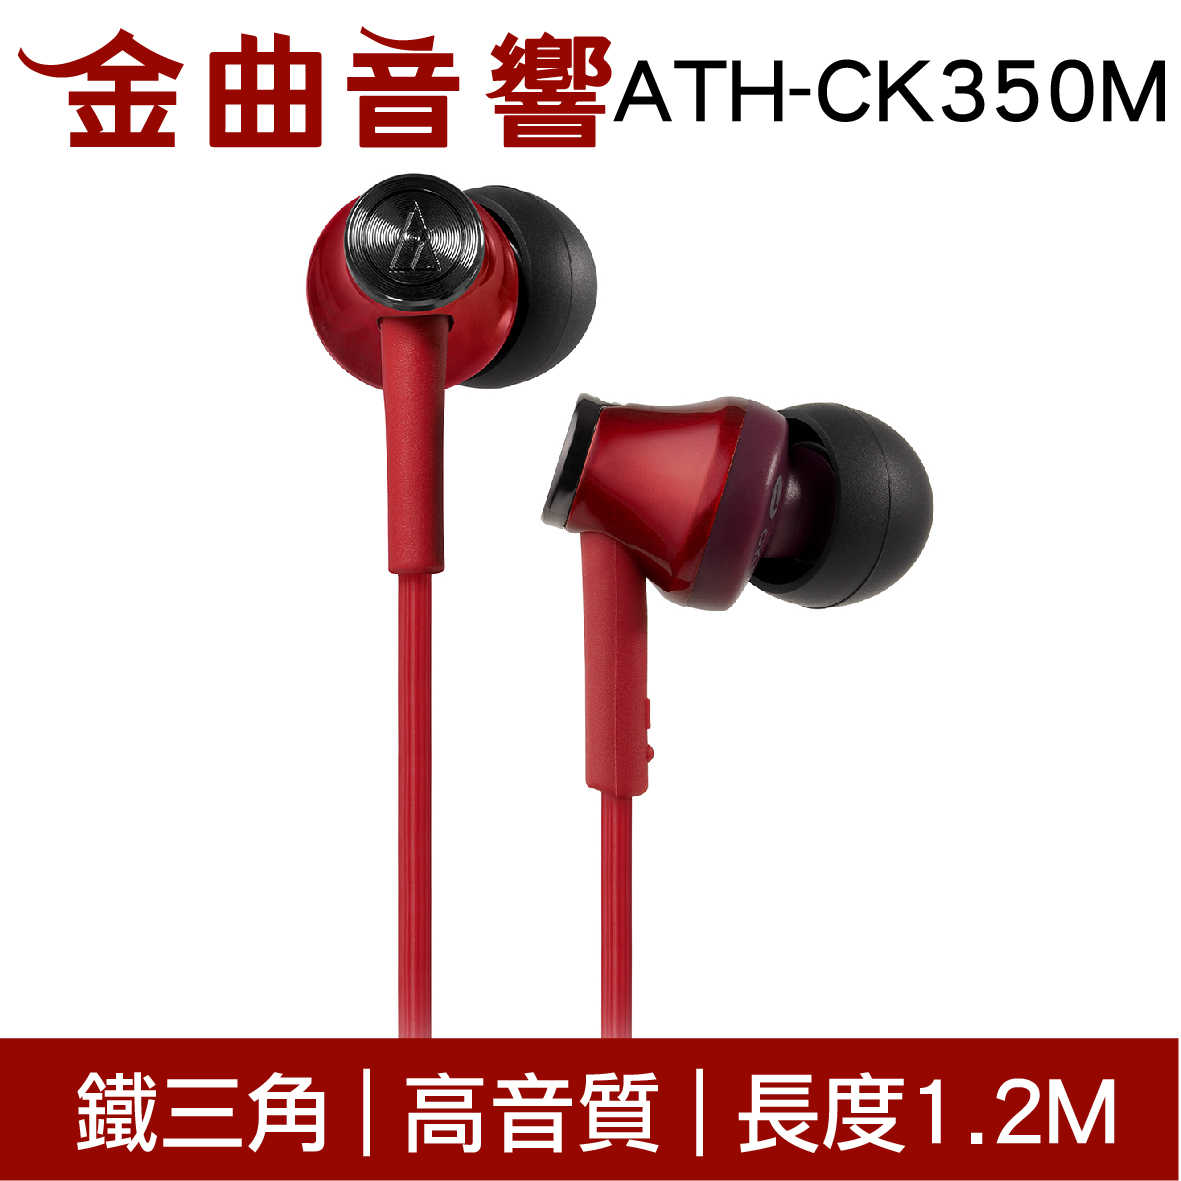 鐵三角 ATH-CK350M 黃色 高音質耳道式耳機 | 金曲音響